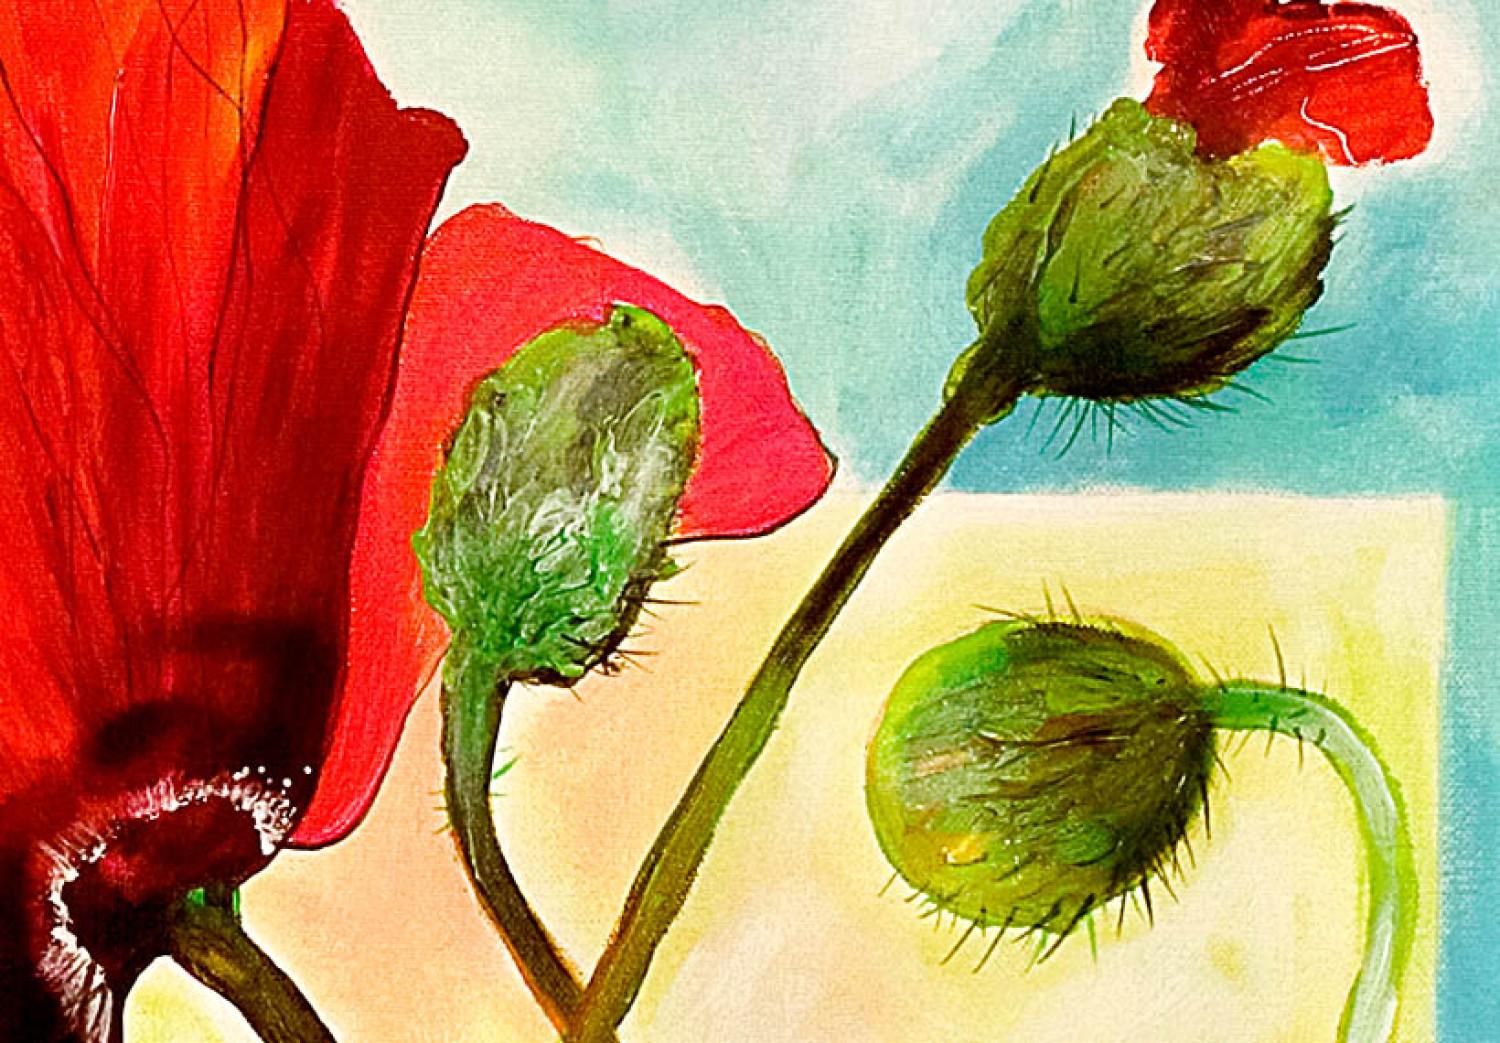 Cuadro Alegres amapolas rojas en flor (1 pieza) - colorido motivo floral